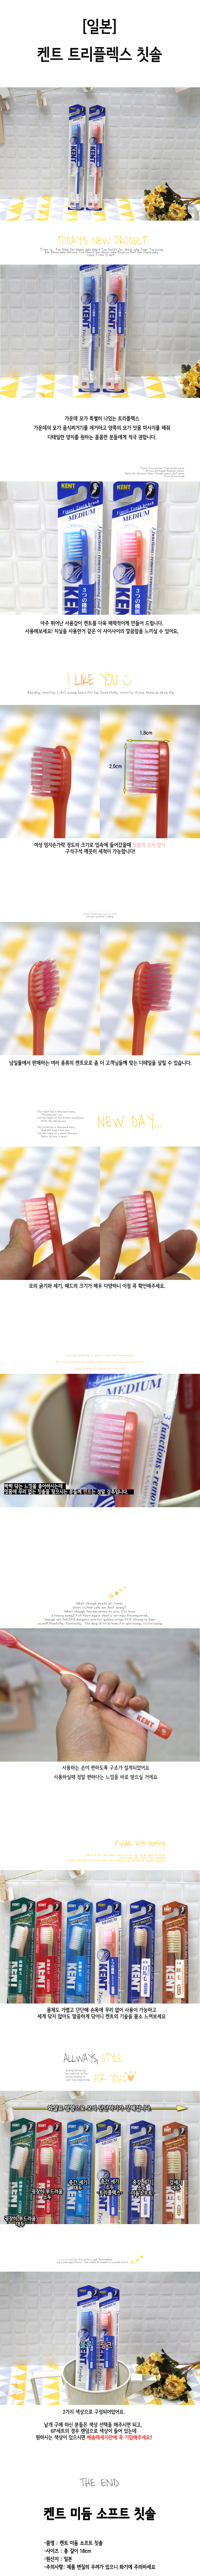 일본 켄트 칫솔 트리플렉스 KNT-4211 오렌지 칫솔 일반칫솔 일반모칫솔 이닦기 이닦는칫솔 치아칫솔 양치질칫솔 치아닦기 치아닦는칫솔 양치칫솔